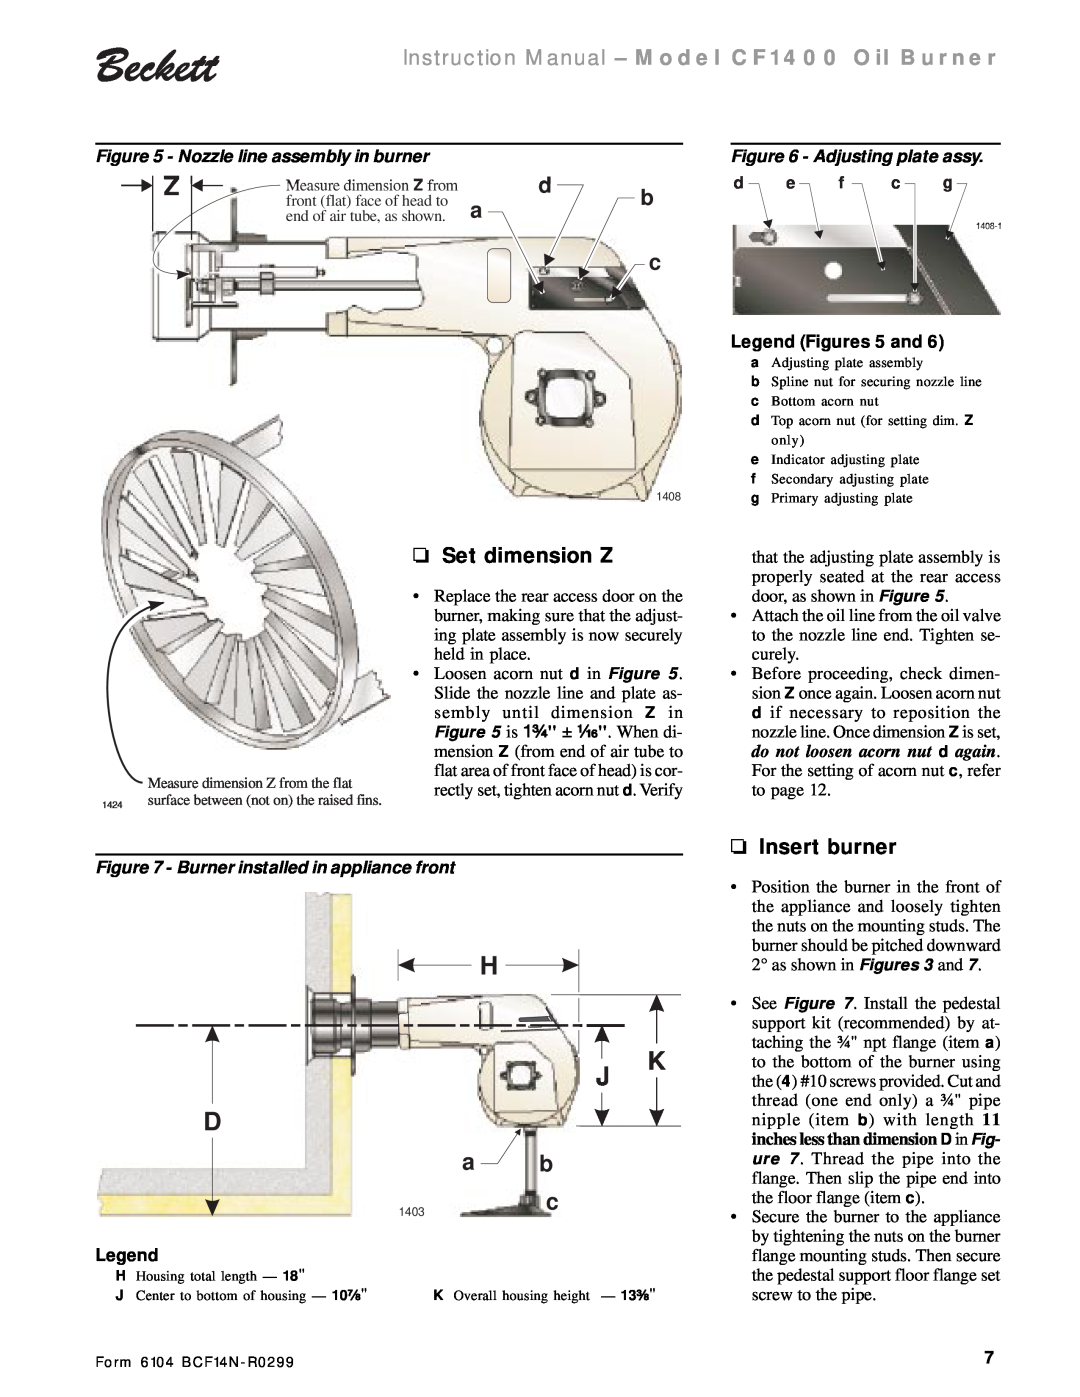 Beckett CF 1400 a b, Set dimension Z, Insert burner, Nozzle line assembly in burner, Adjusting plate assy, H J D 